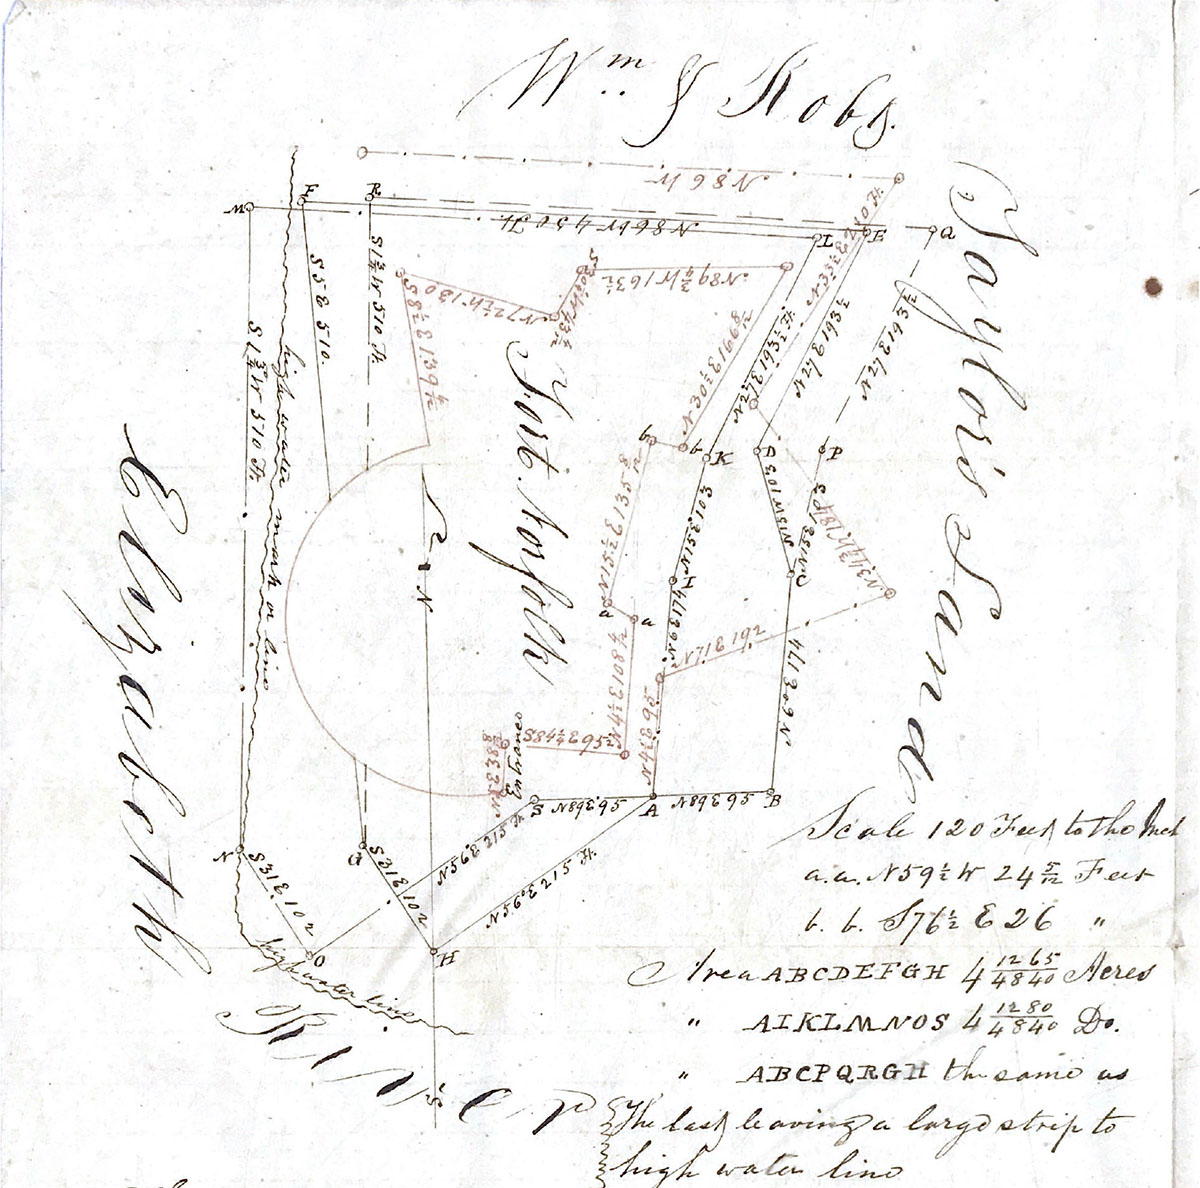  Fort Norfolk survey 1843